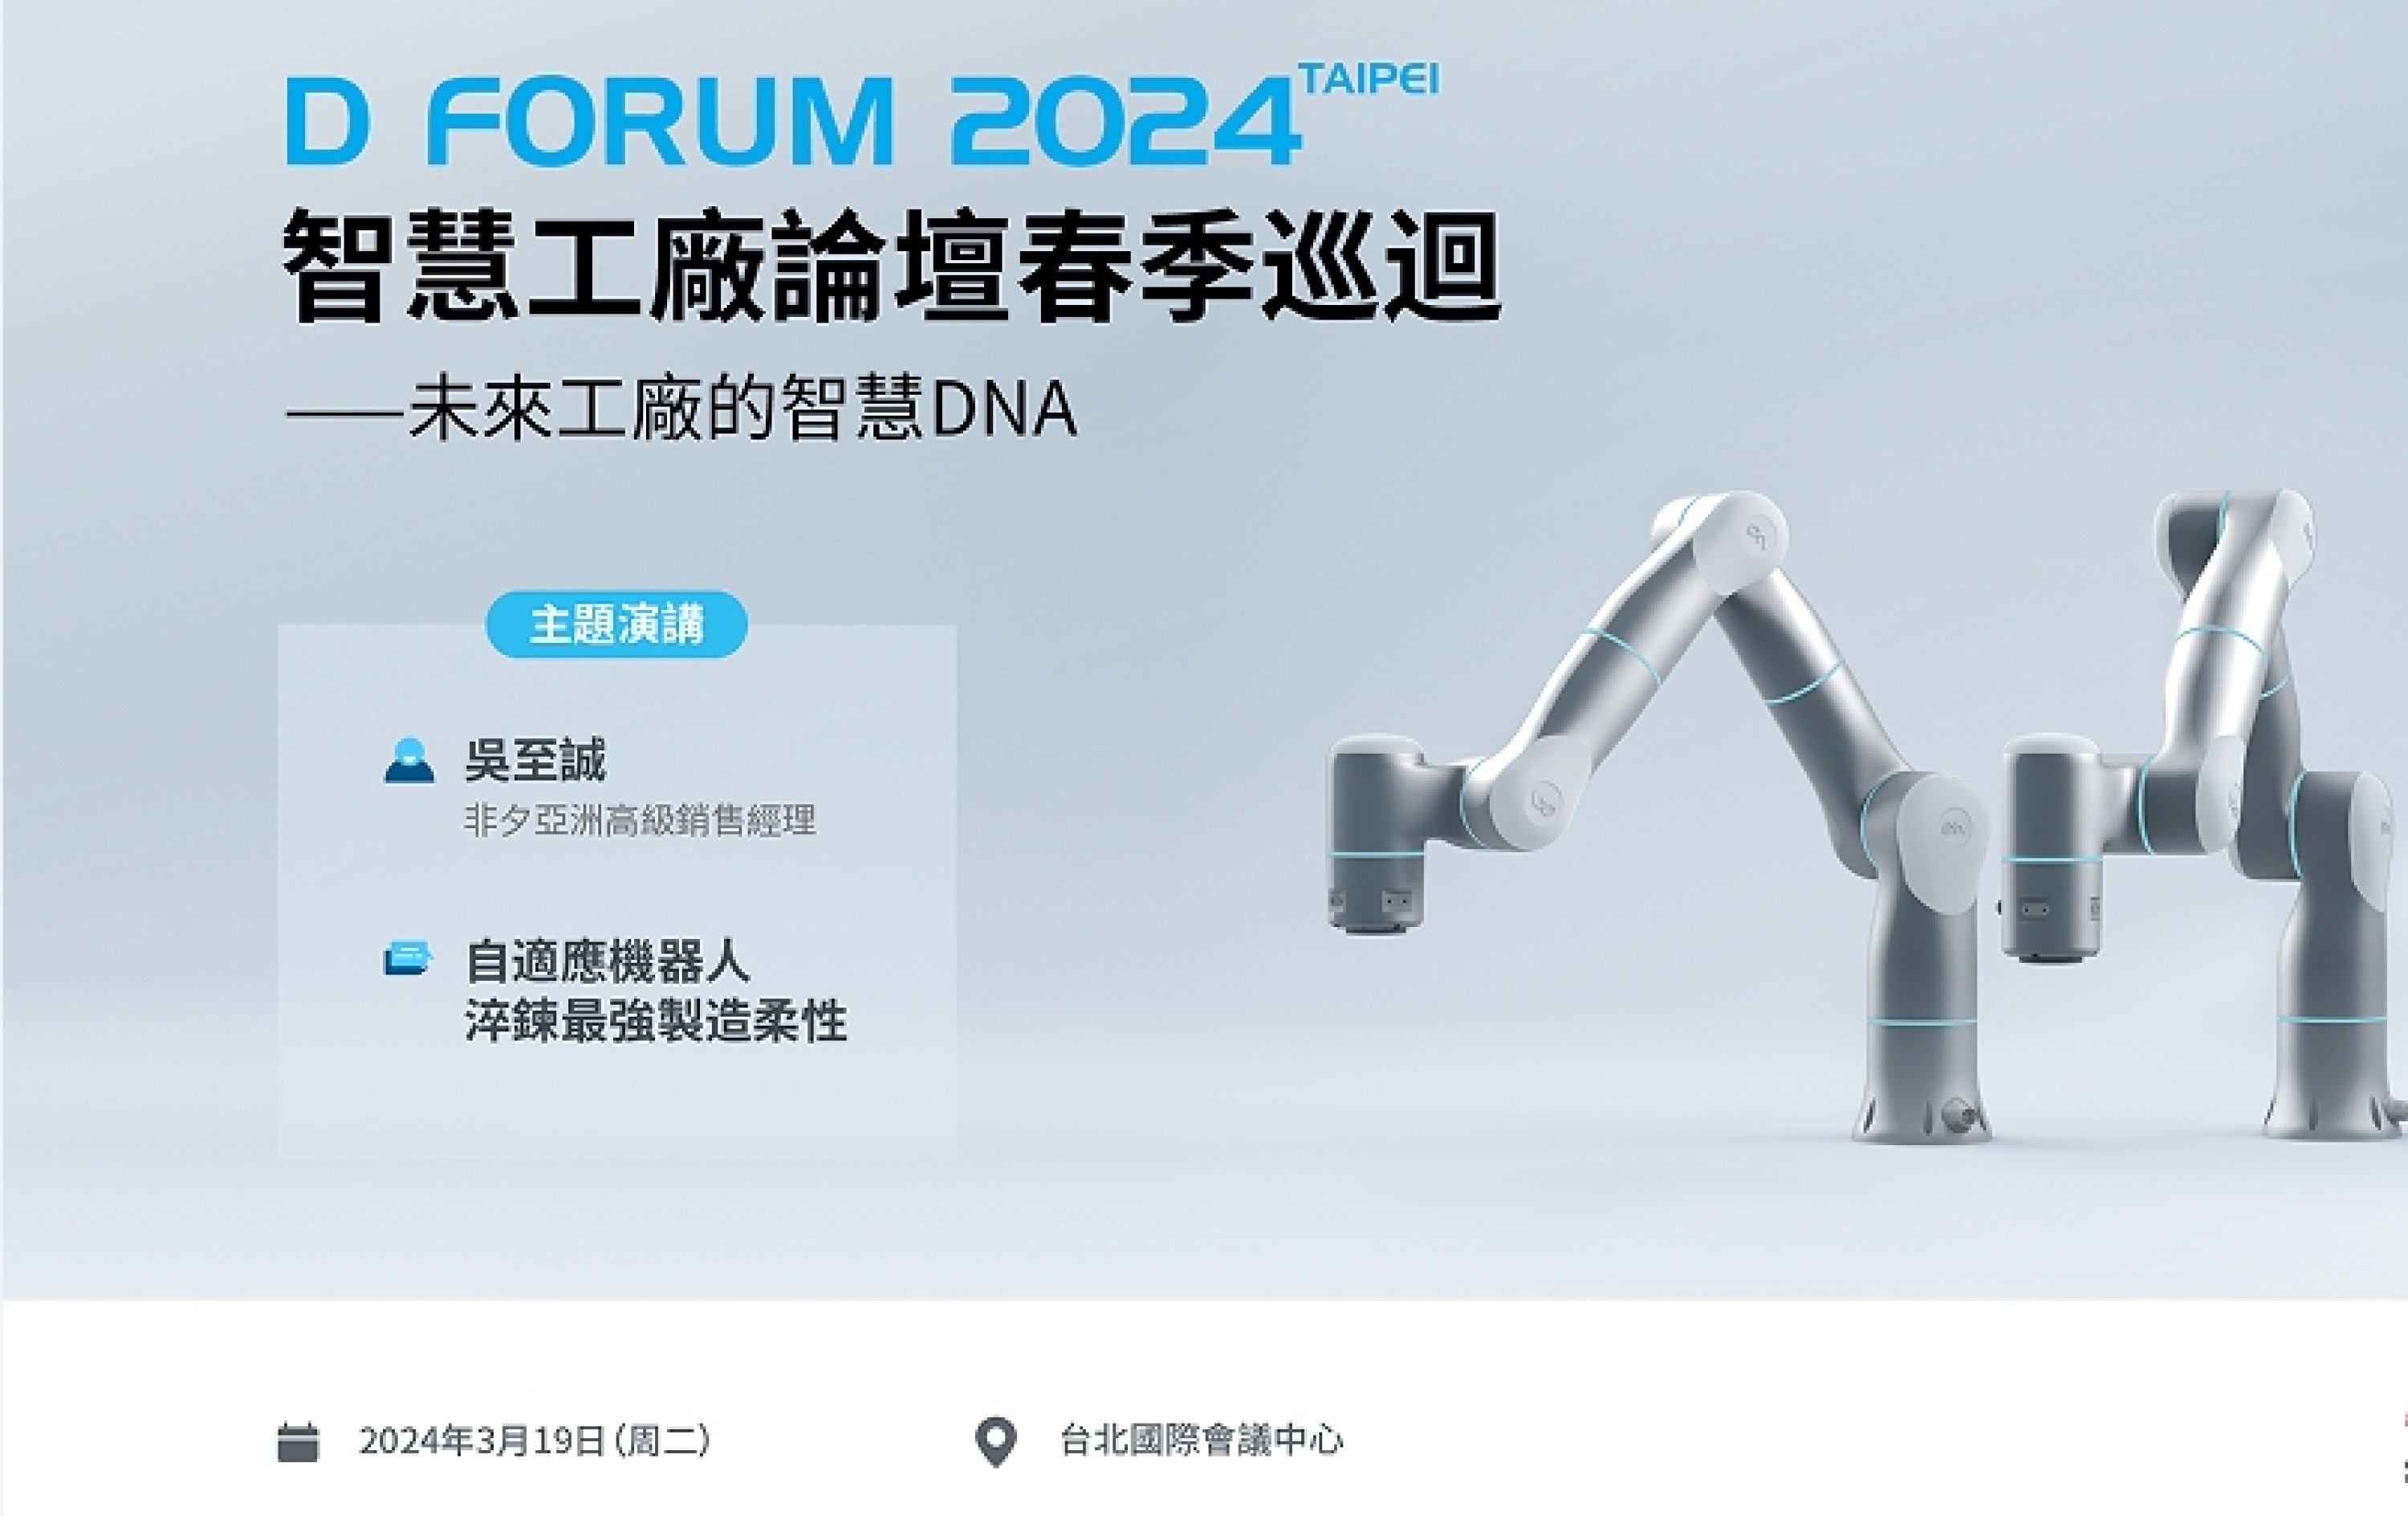 D Forum 2024 Taipei